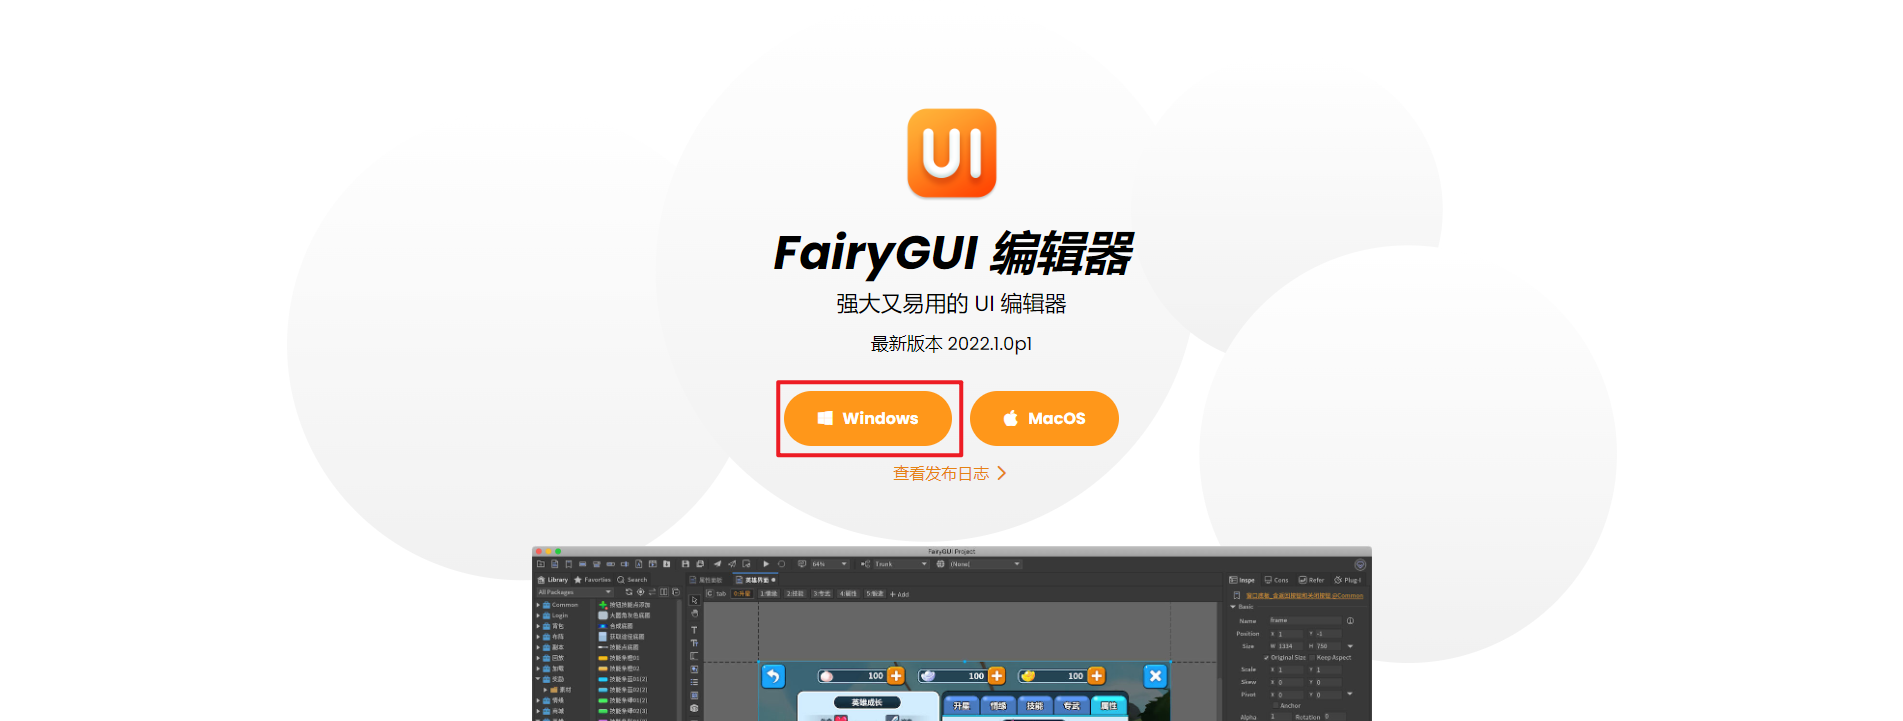 FariyGUI × Cocos Creator 入门